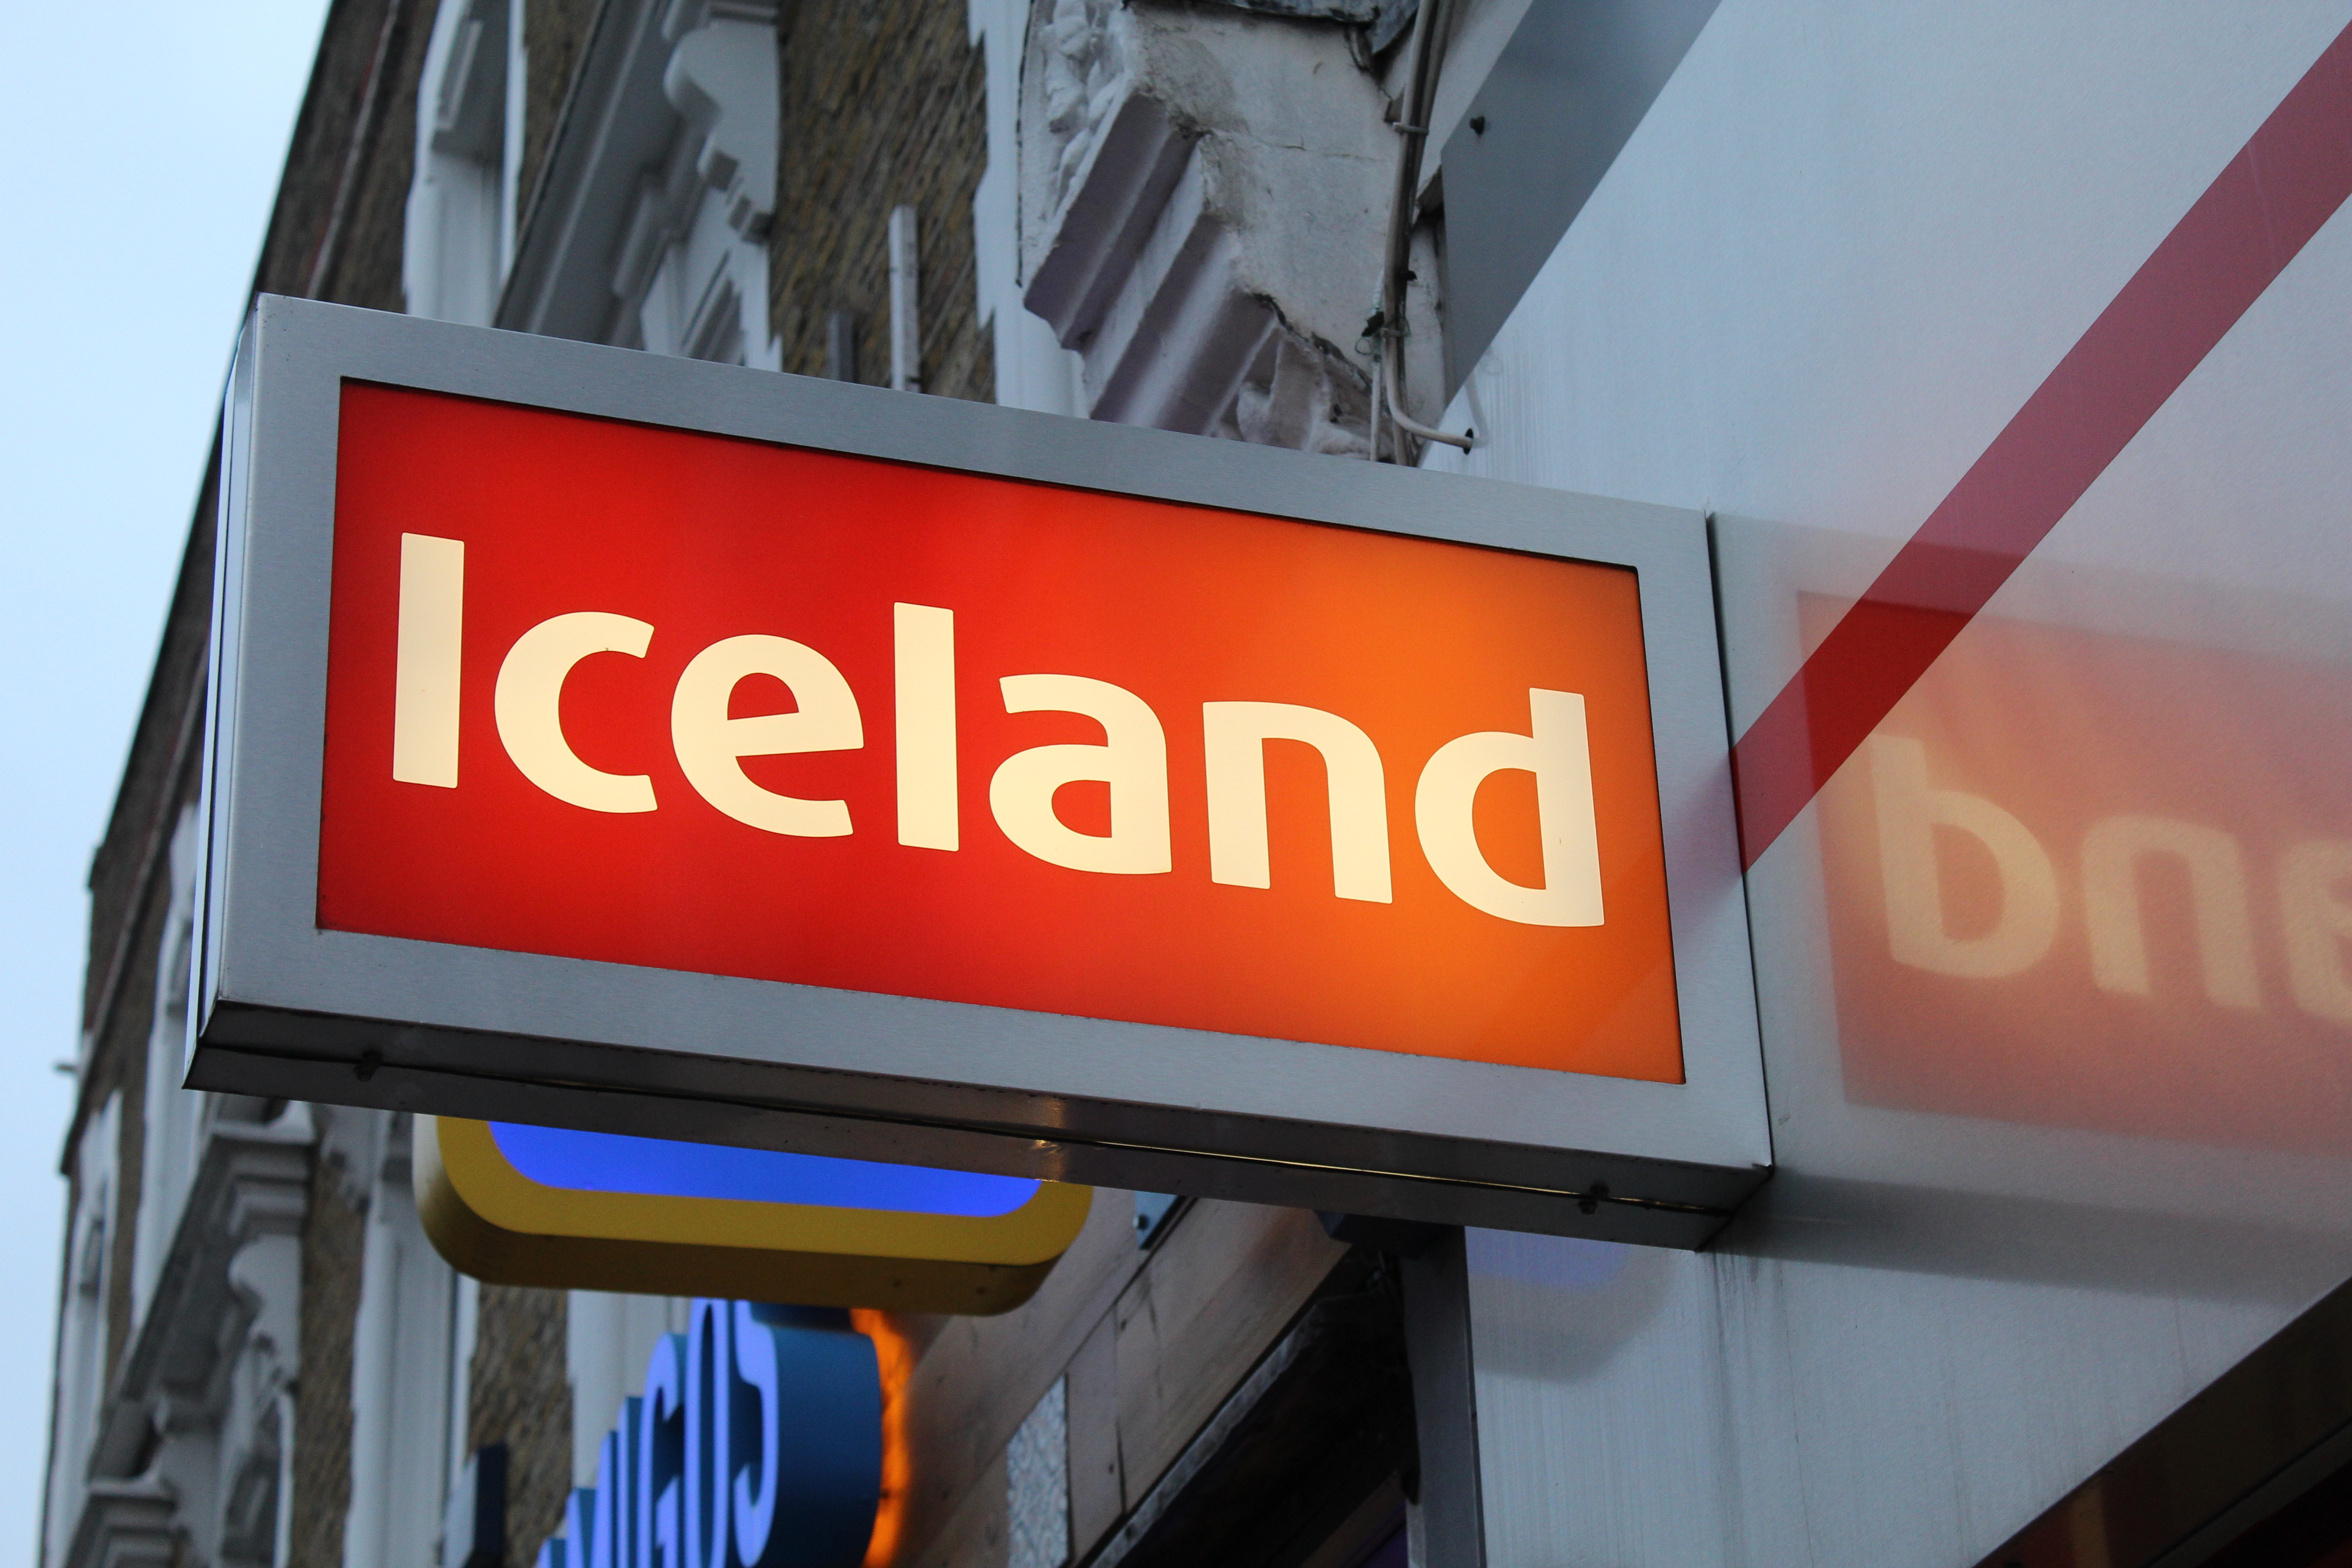 Familien haben die Möglichkeit, bis zu 300 £ zu ergattern, die sie in Island ausgeben können